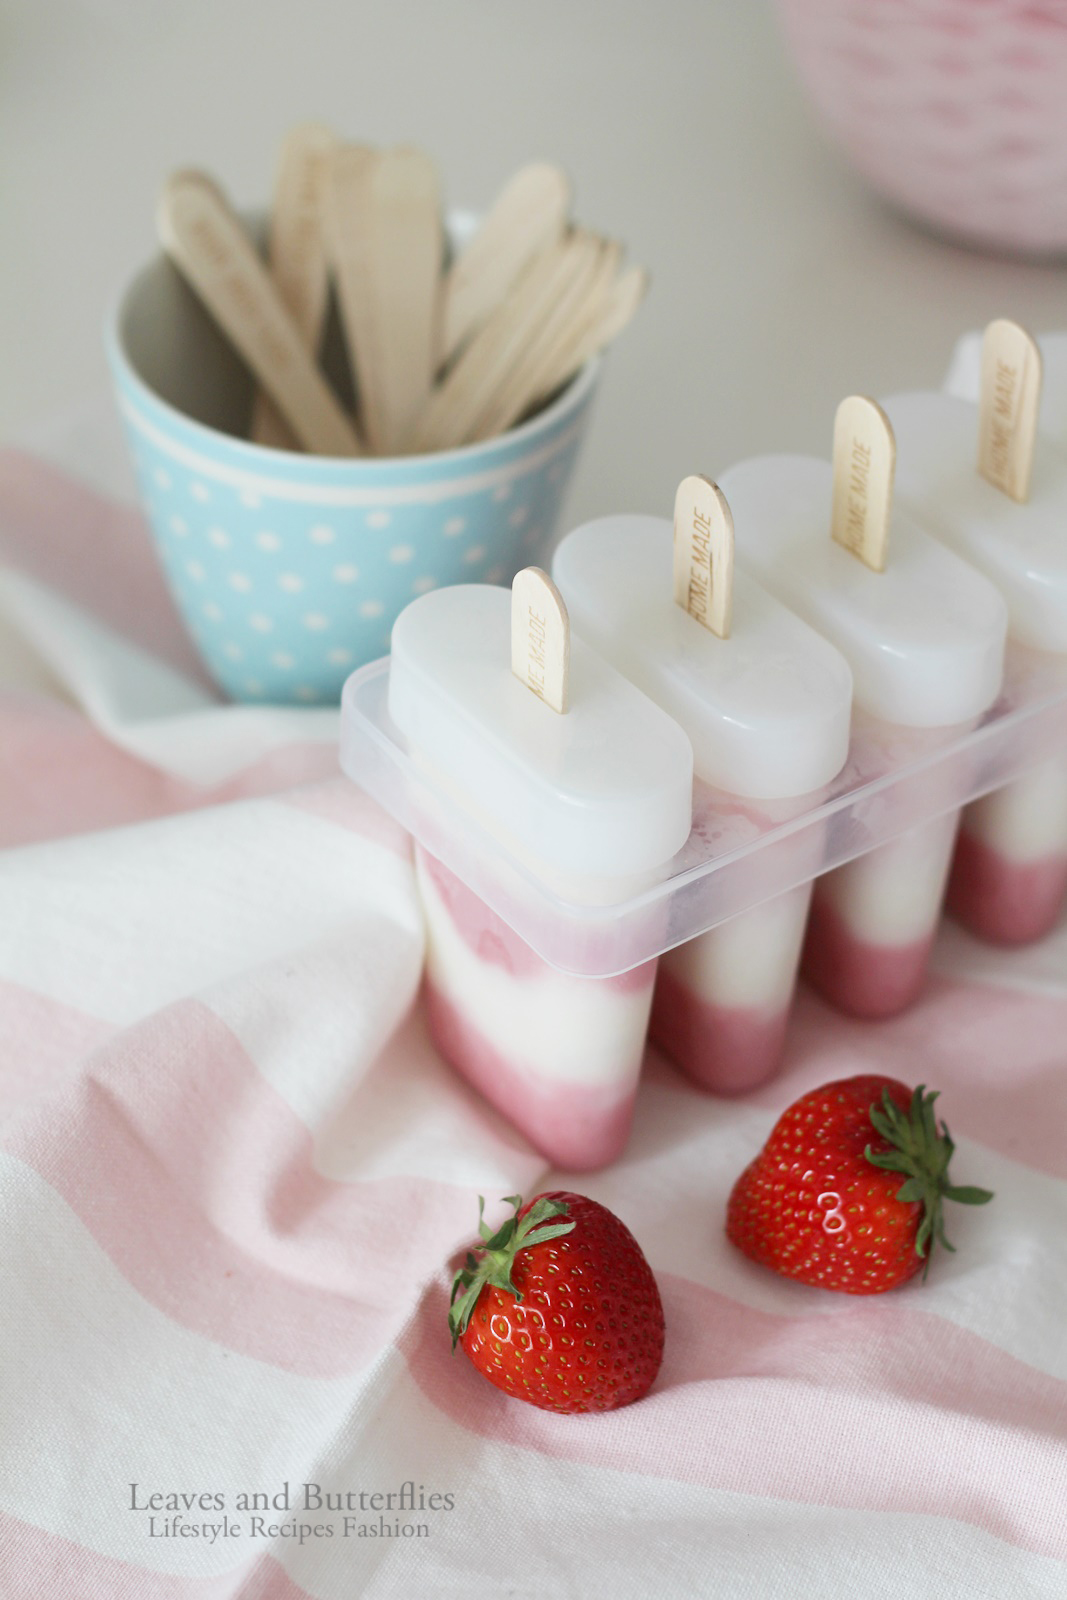 Erdbeer-Buttermilch-Eis: So schmeckt der Sommer!